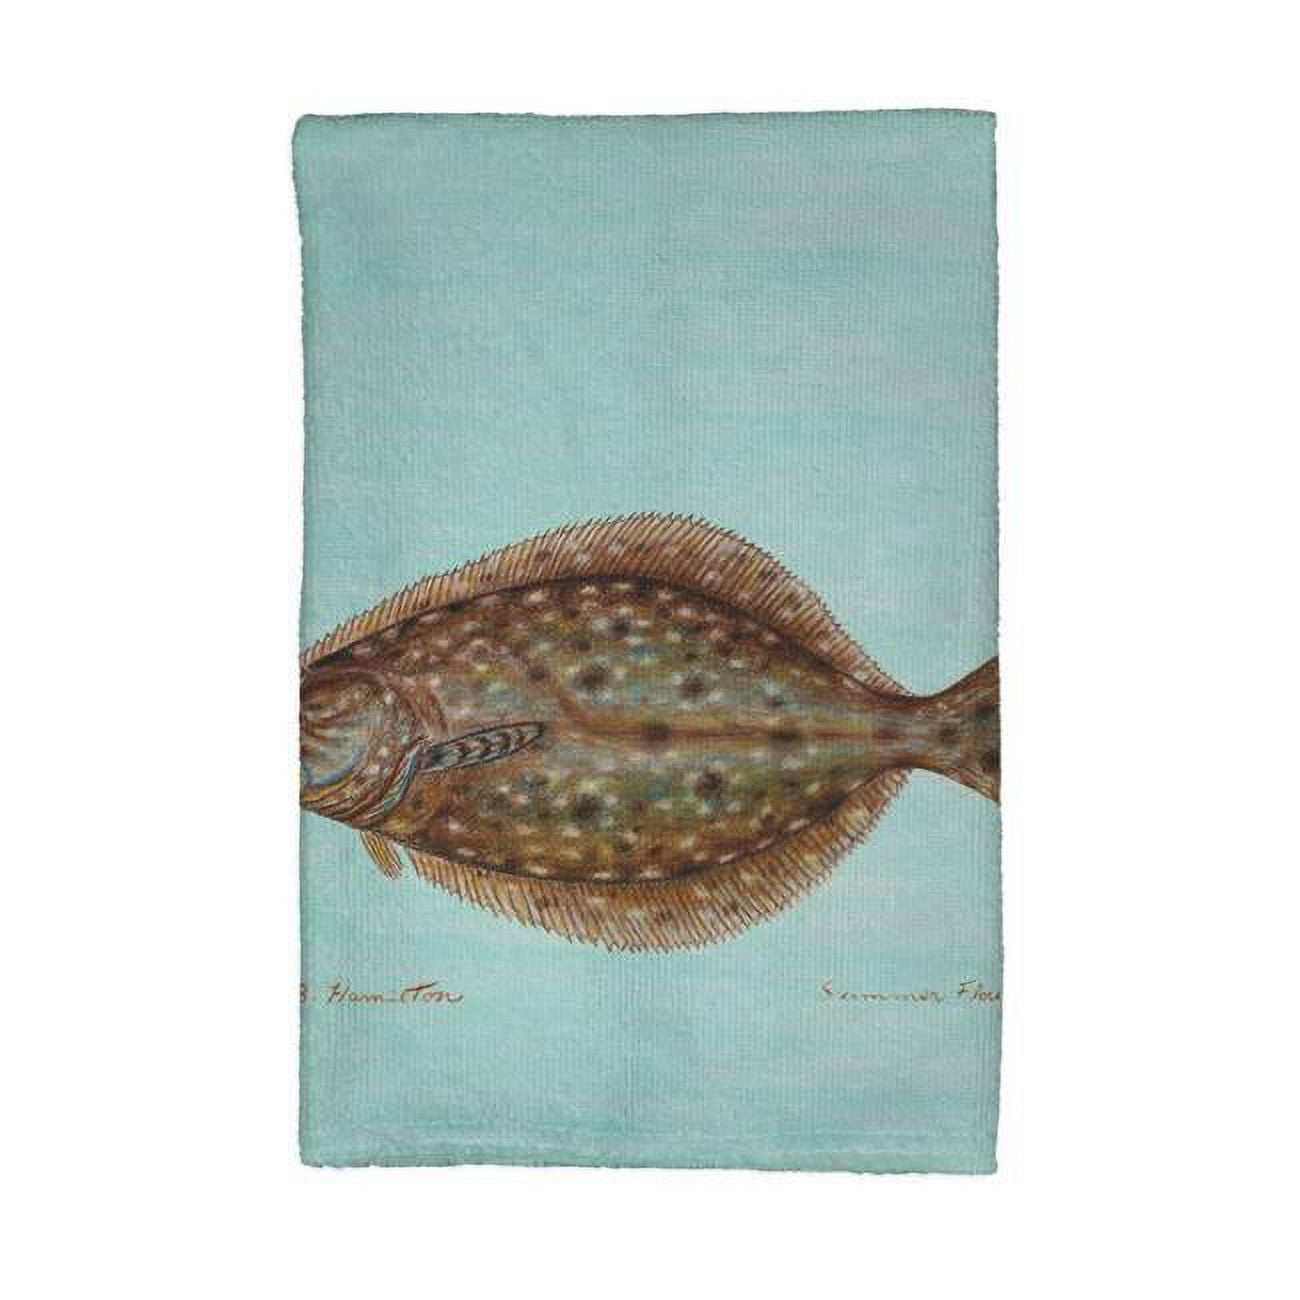 Kt014c Flounder On Teal Kitchen Towel